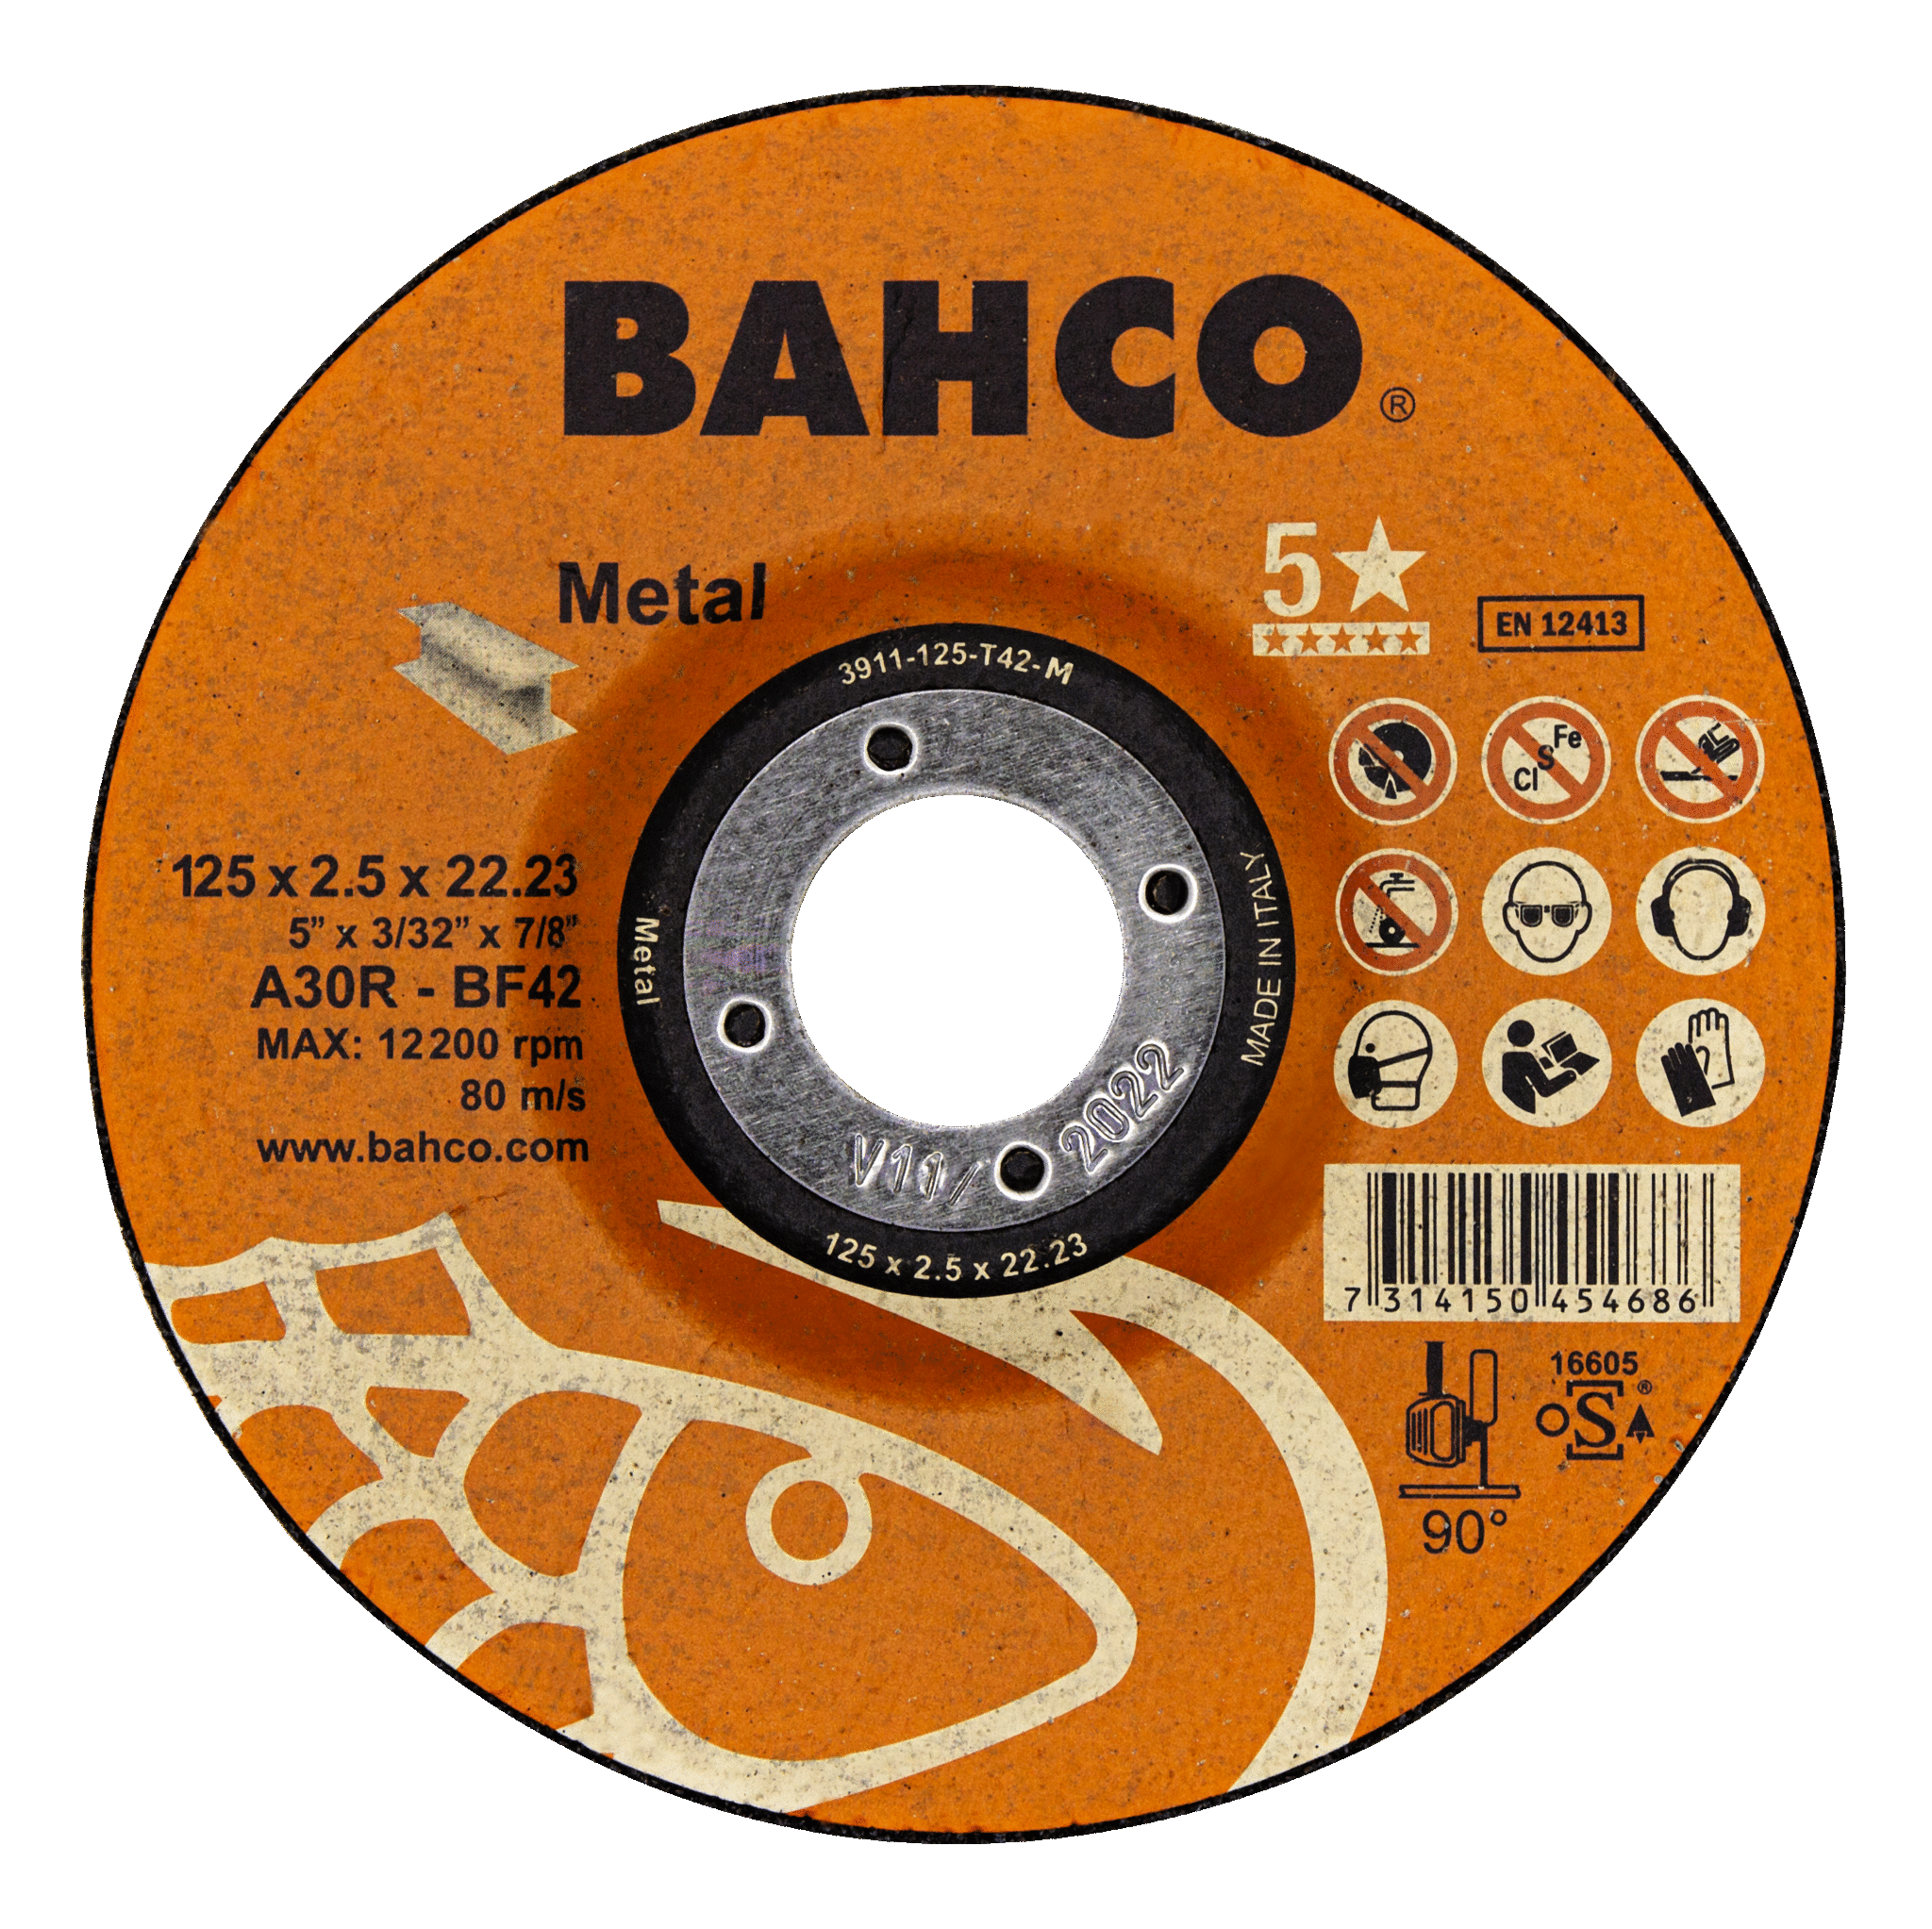 Высокопроизводительные дисковые пилы для металла 150 x 2.5 x 22.23mm BAHCO 3911-150-T42-M